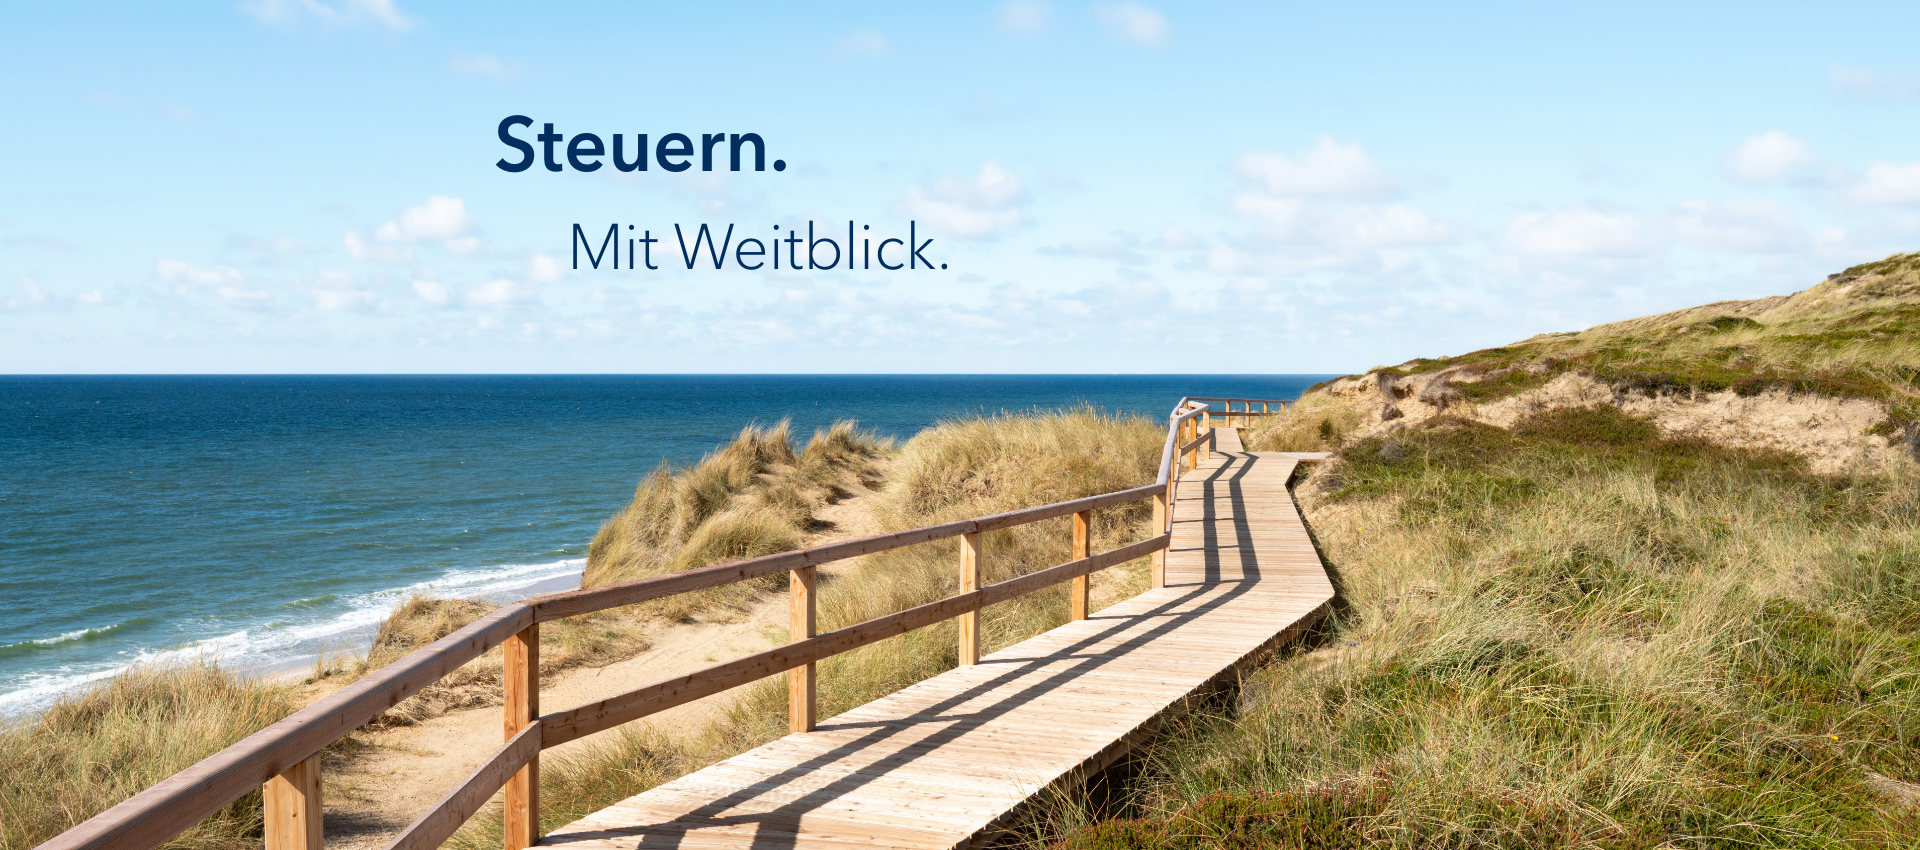 Headerbild: Schleswig-Holstein, Meer mit dem Slogan "Steuern. Mit Weitblick."